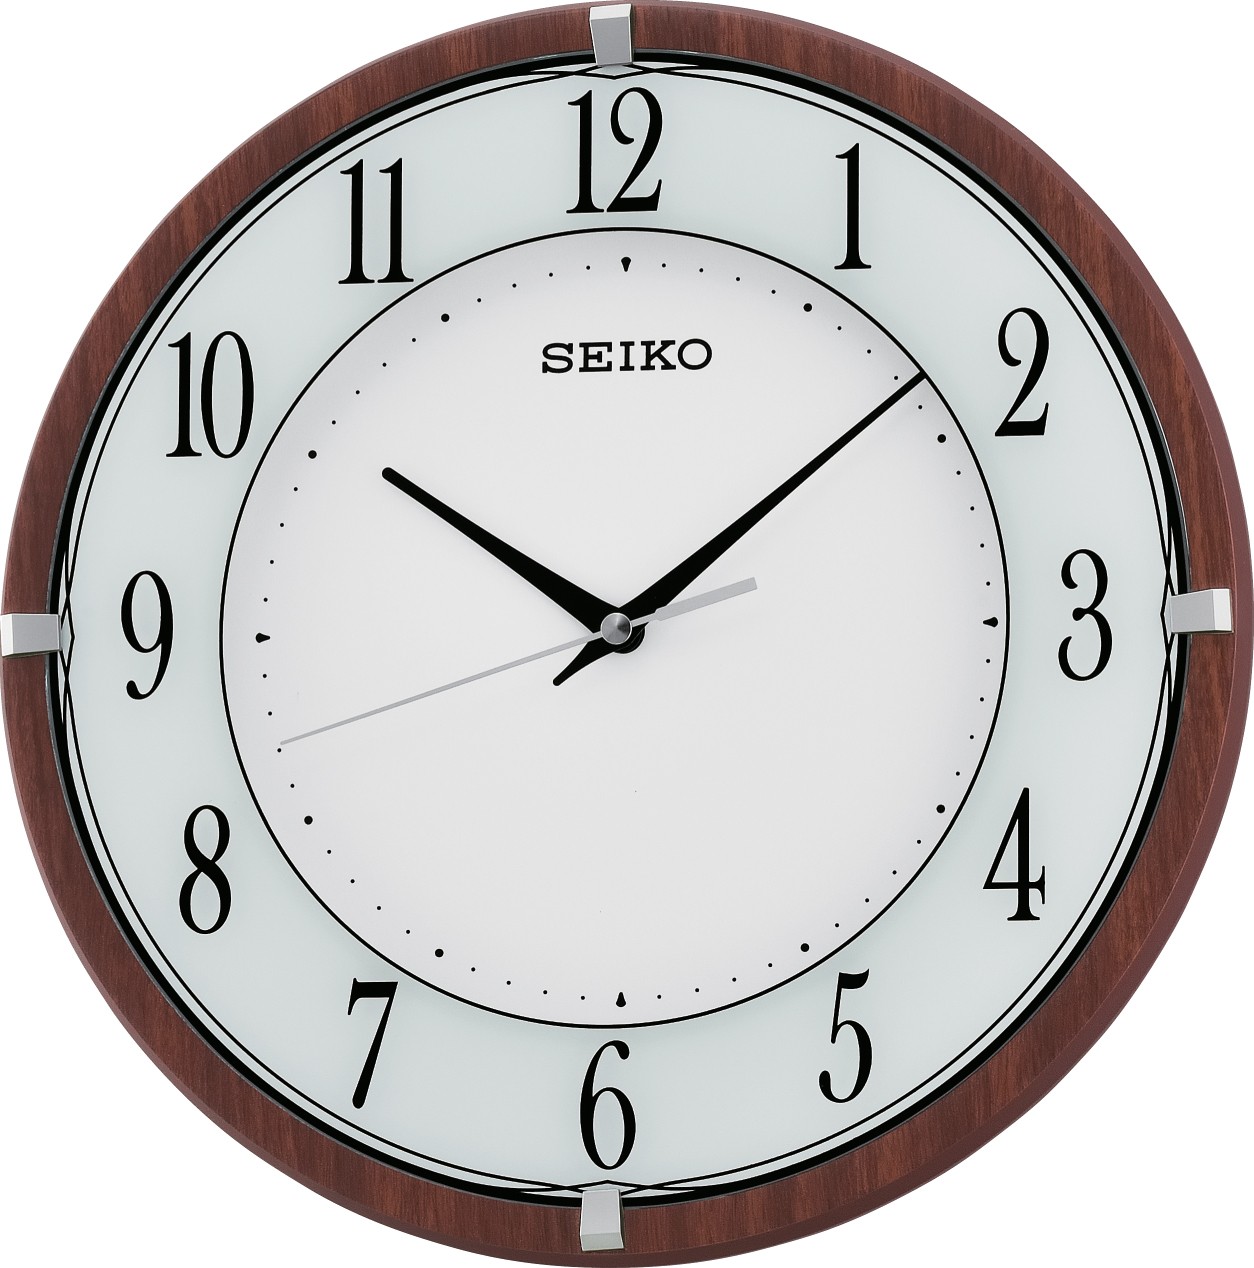 Seiko Clocks Women's accessories SEIKO CLOCKS PARED QXA678B | Comprar  accessories SEIKO CLOCKS PARED Barato » Comprar online